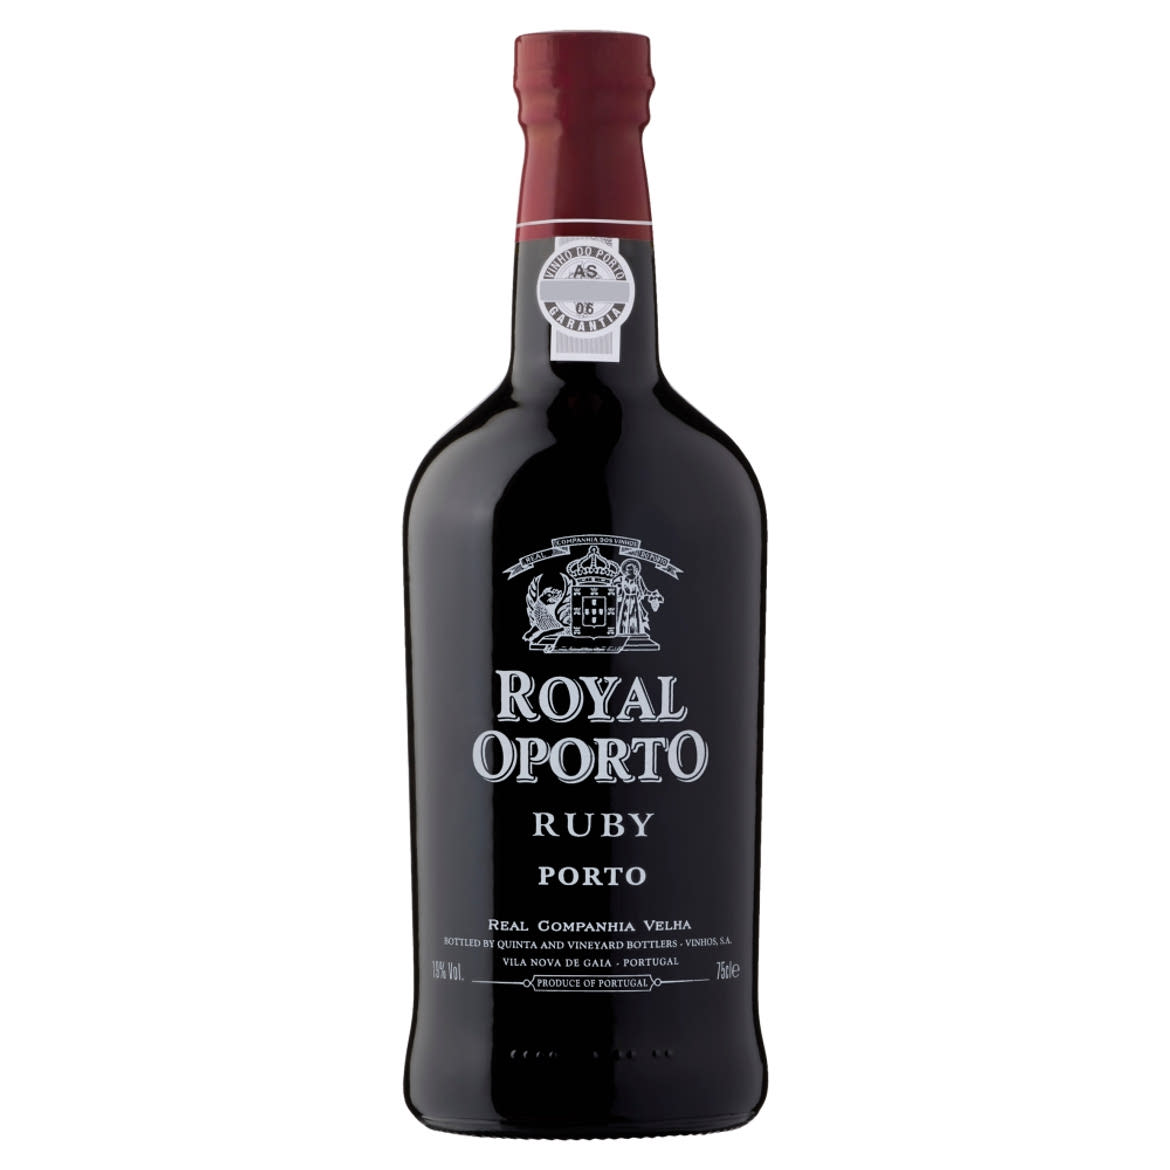 Royal Oporto Ruby édes likőrbor 19% 750 ml